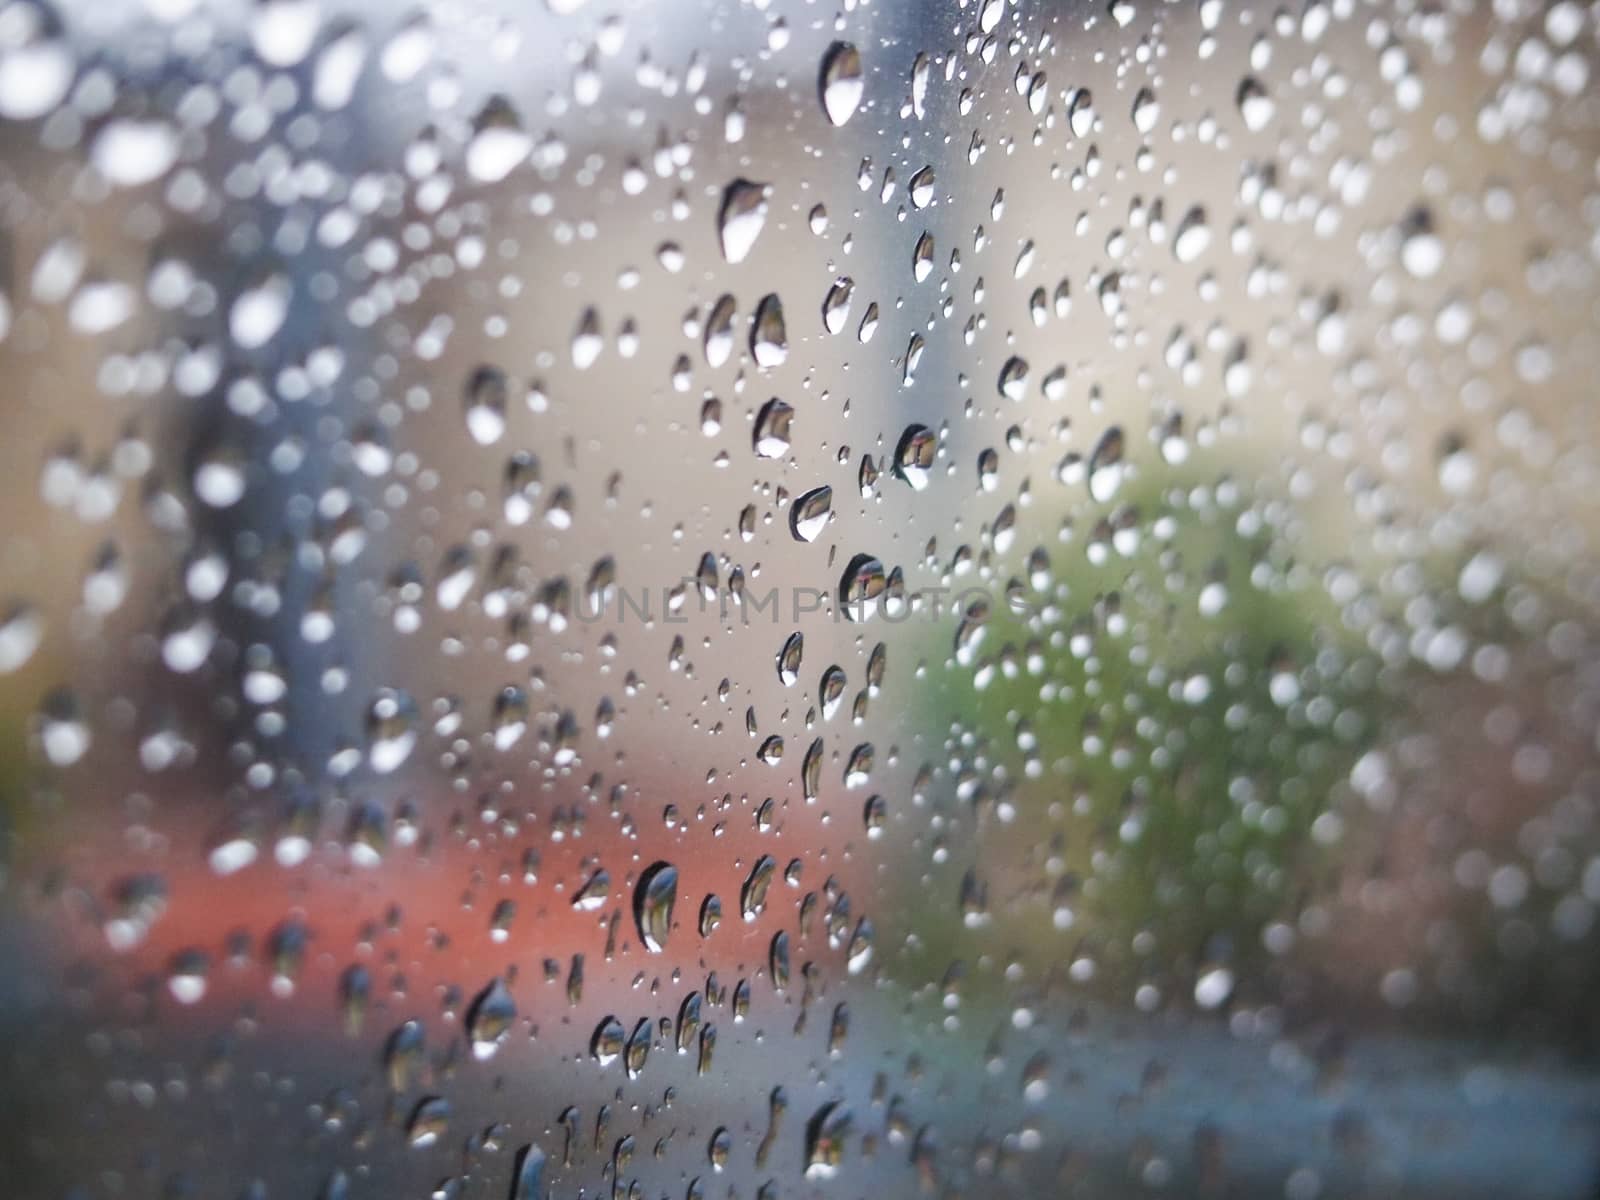 Rain drops on window  by simpleBE